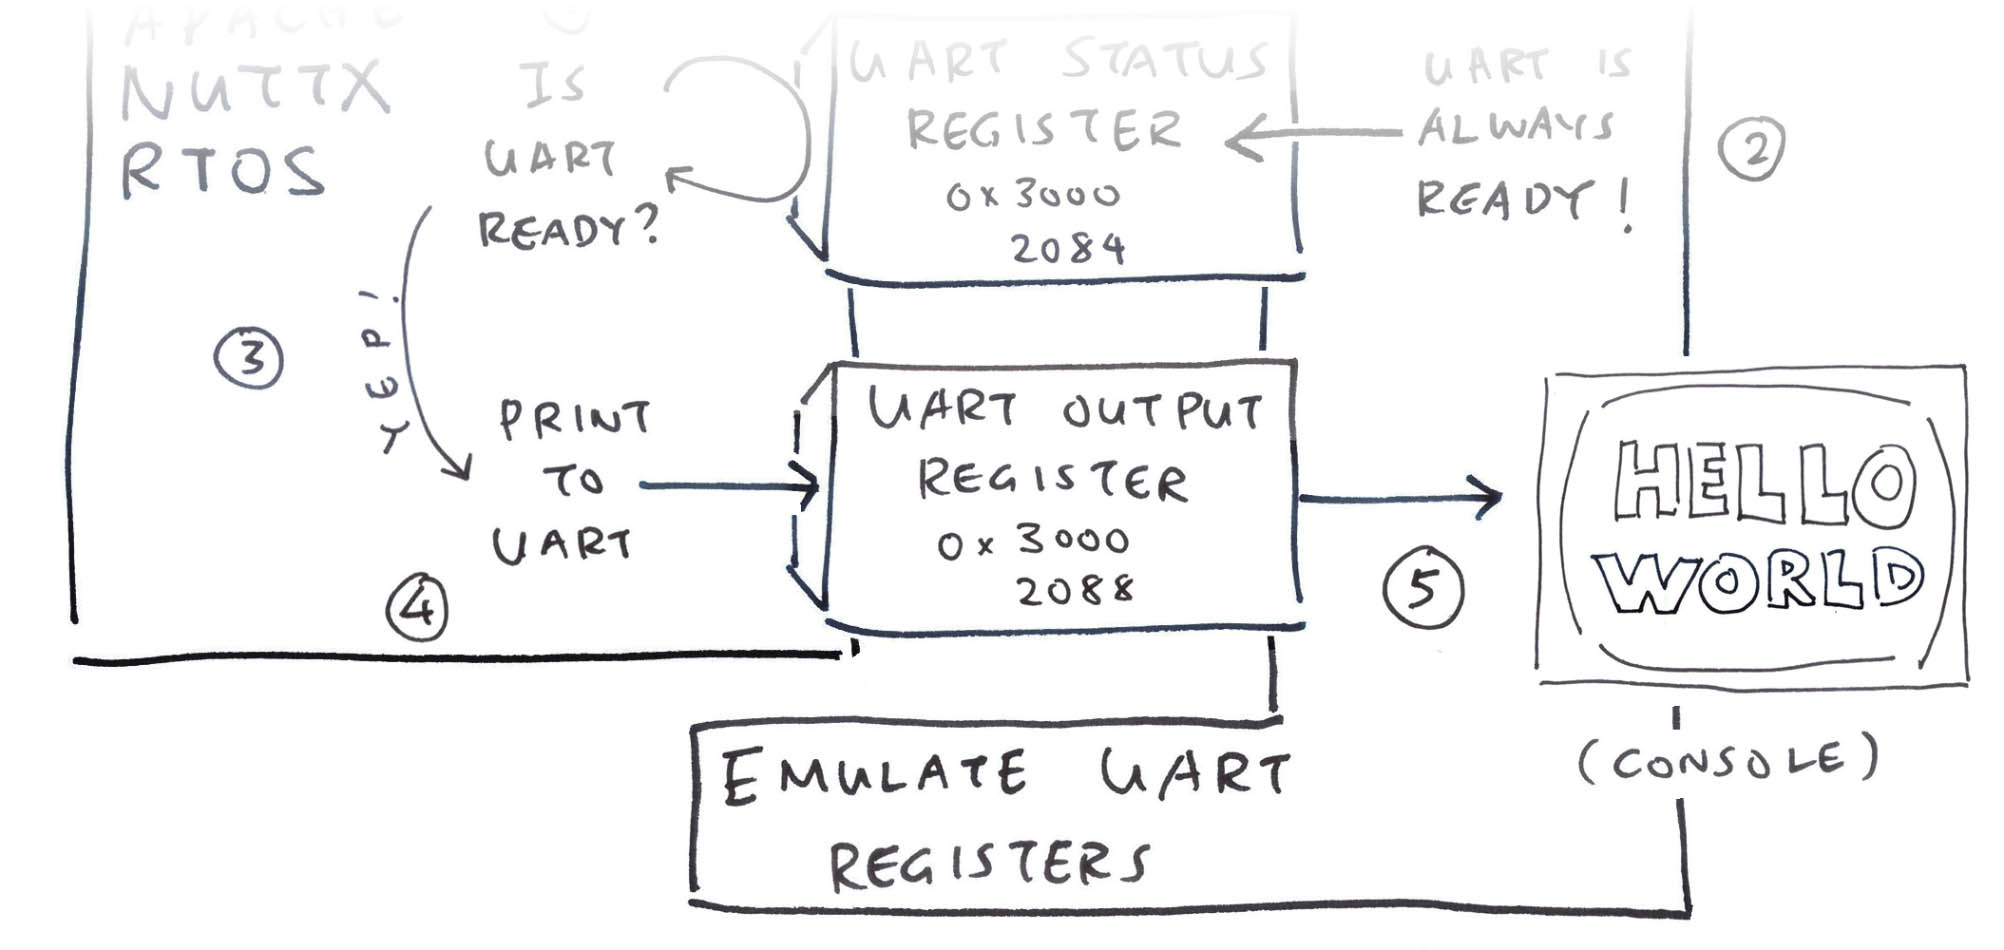 Emulating the UART Output Register with TinyEMU